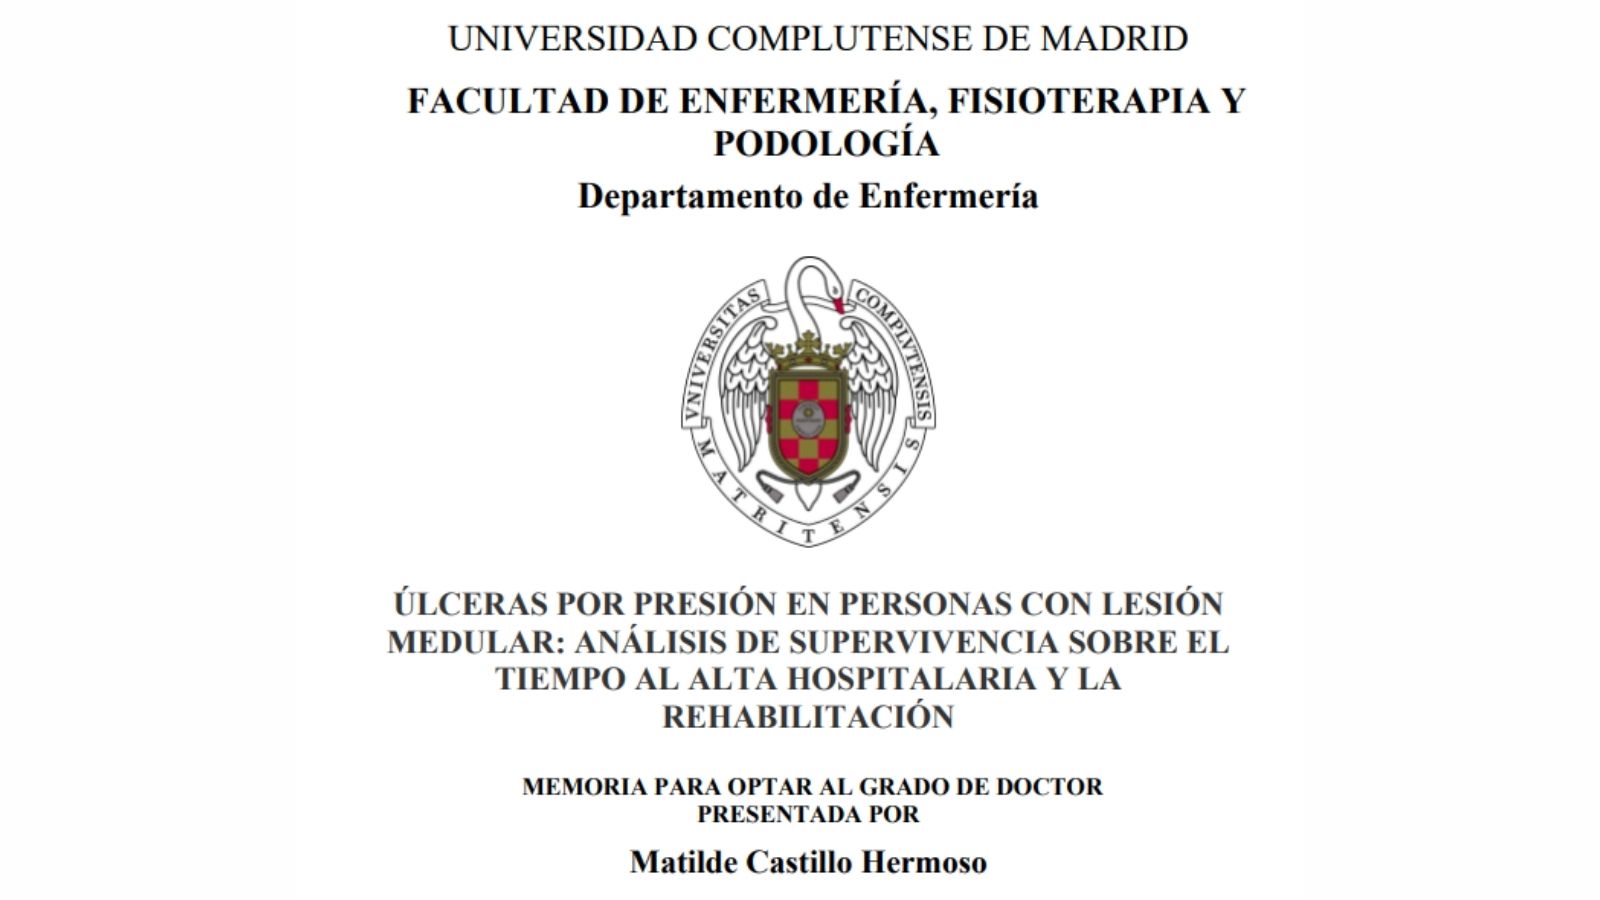 Úlceras por presión en personas con lesión medular de la Dra. Matilde Castillo Hermoso (UCM,2013)